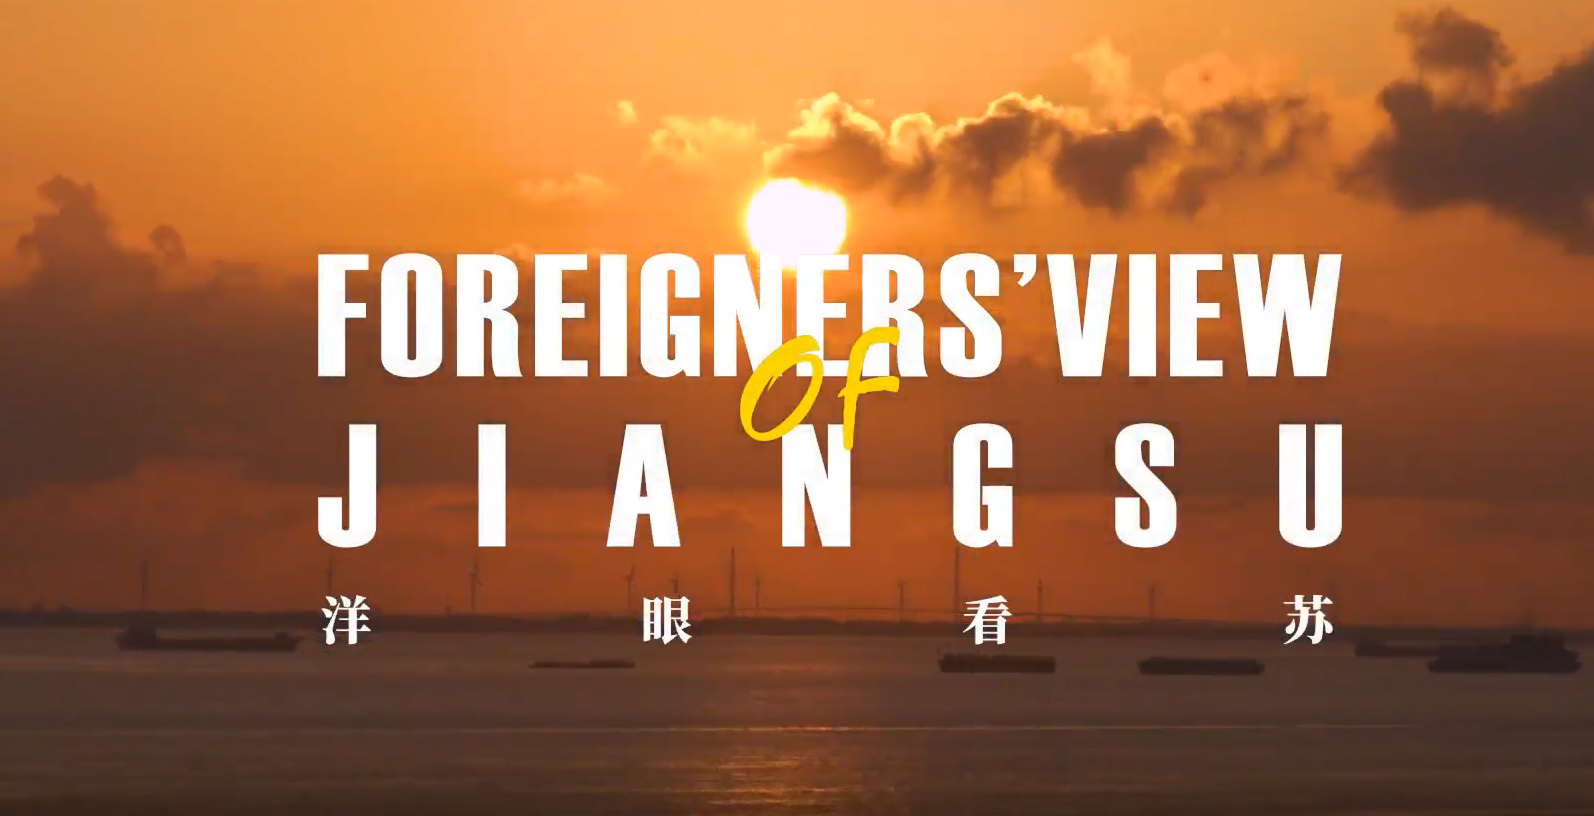 Foreigners' View of Jiangsu